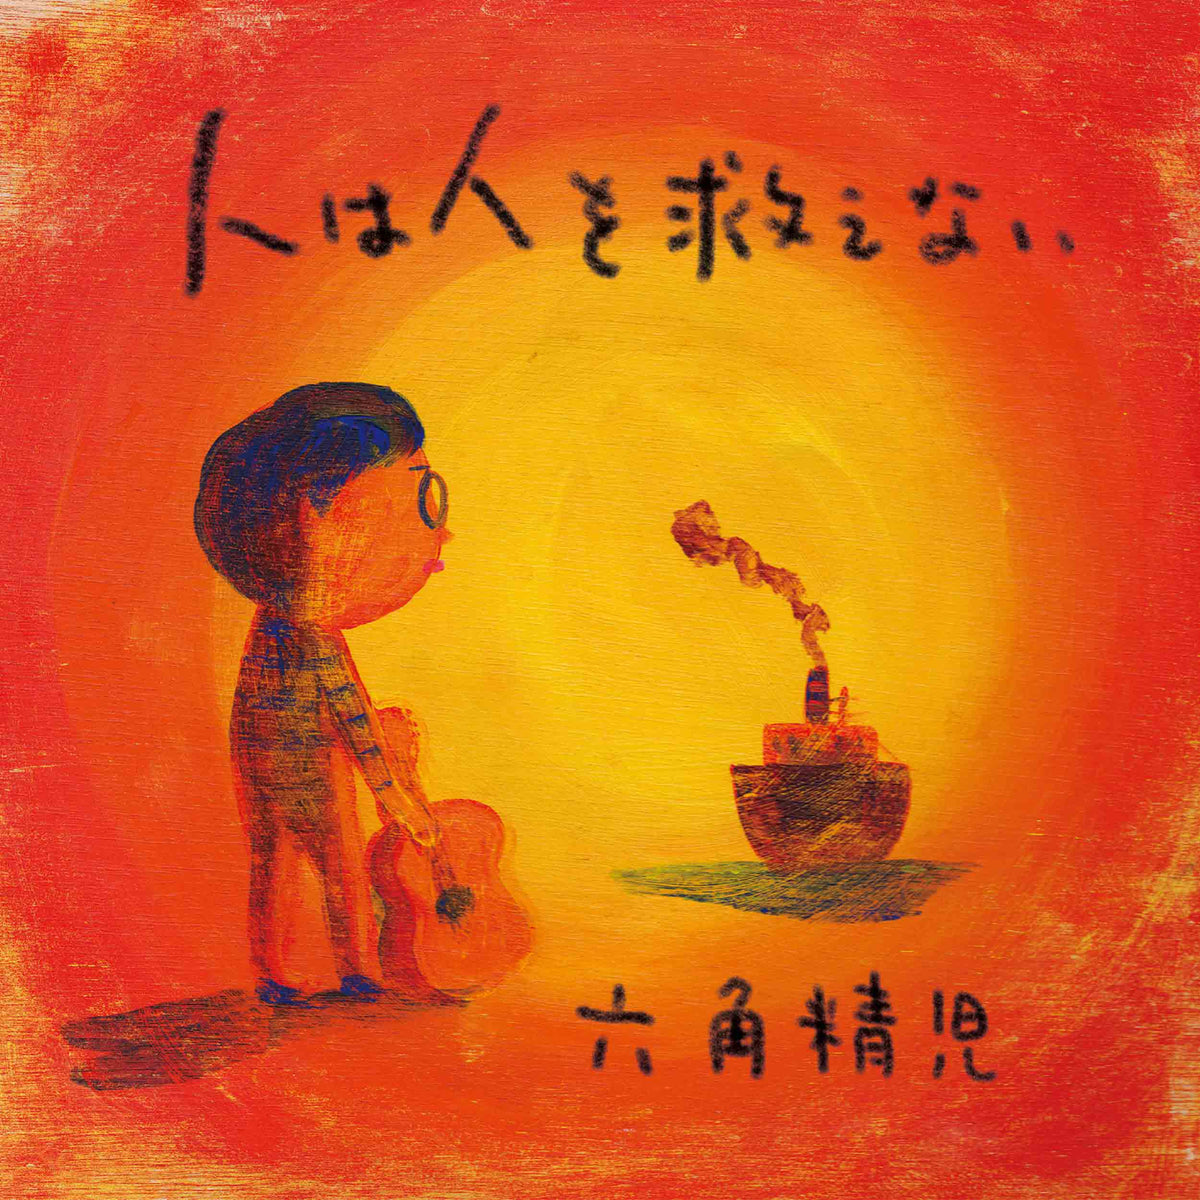 六角精児『人は人を救えない』CD – P-VINE OFFICIAL SHOP